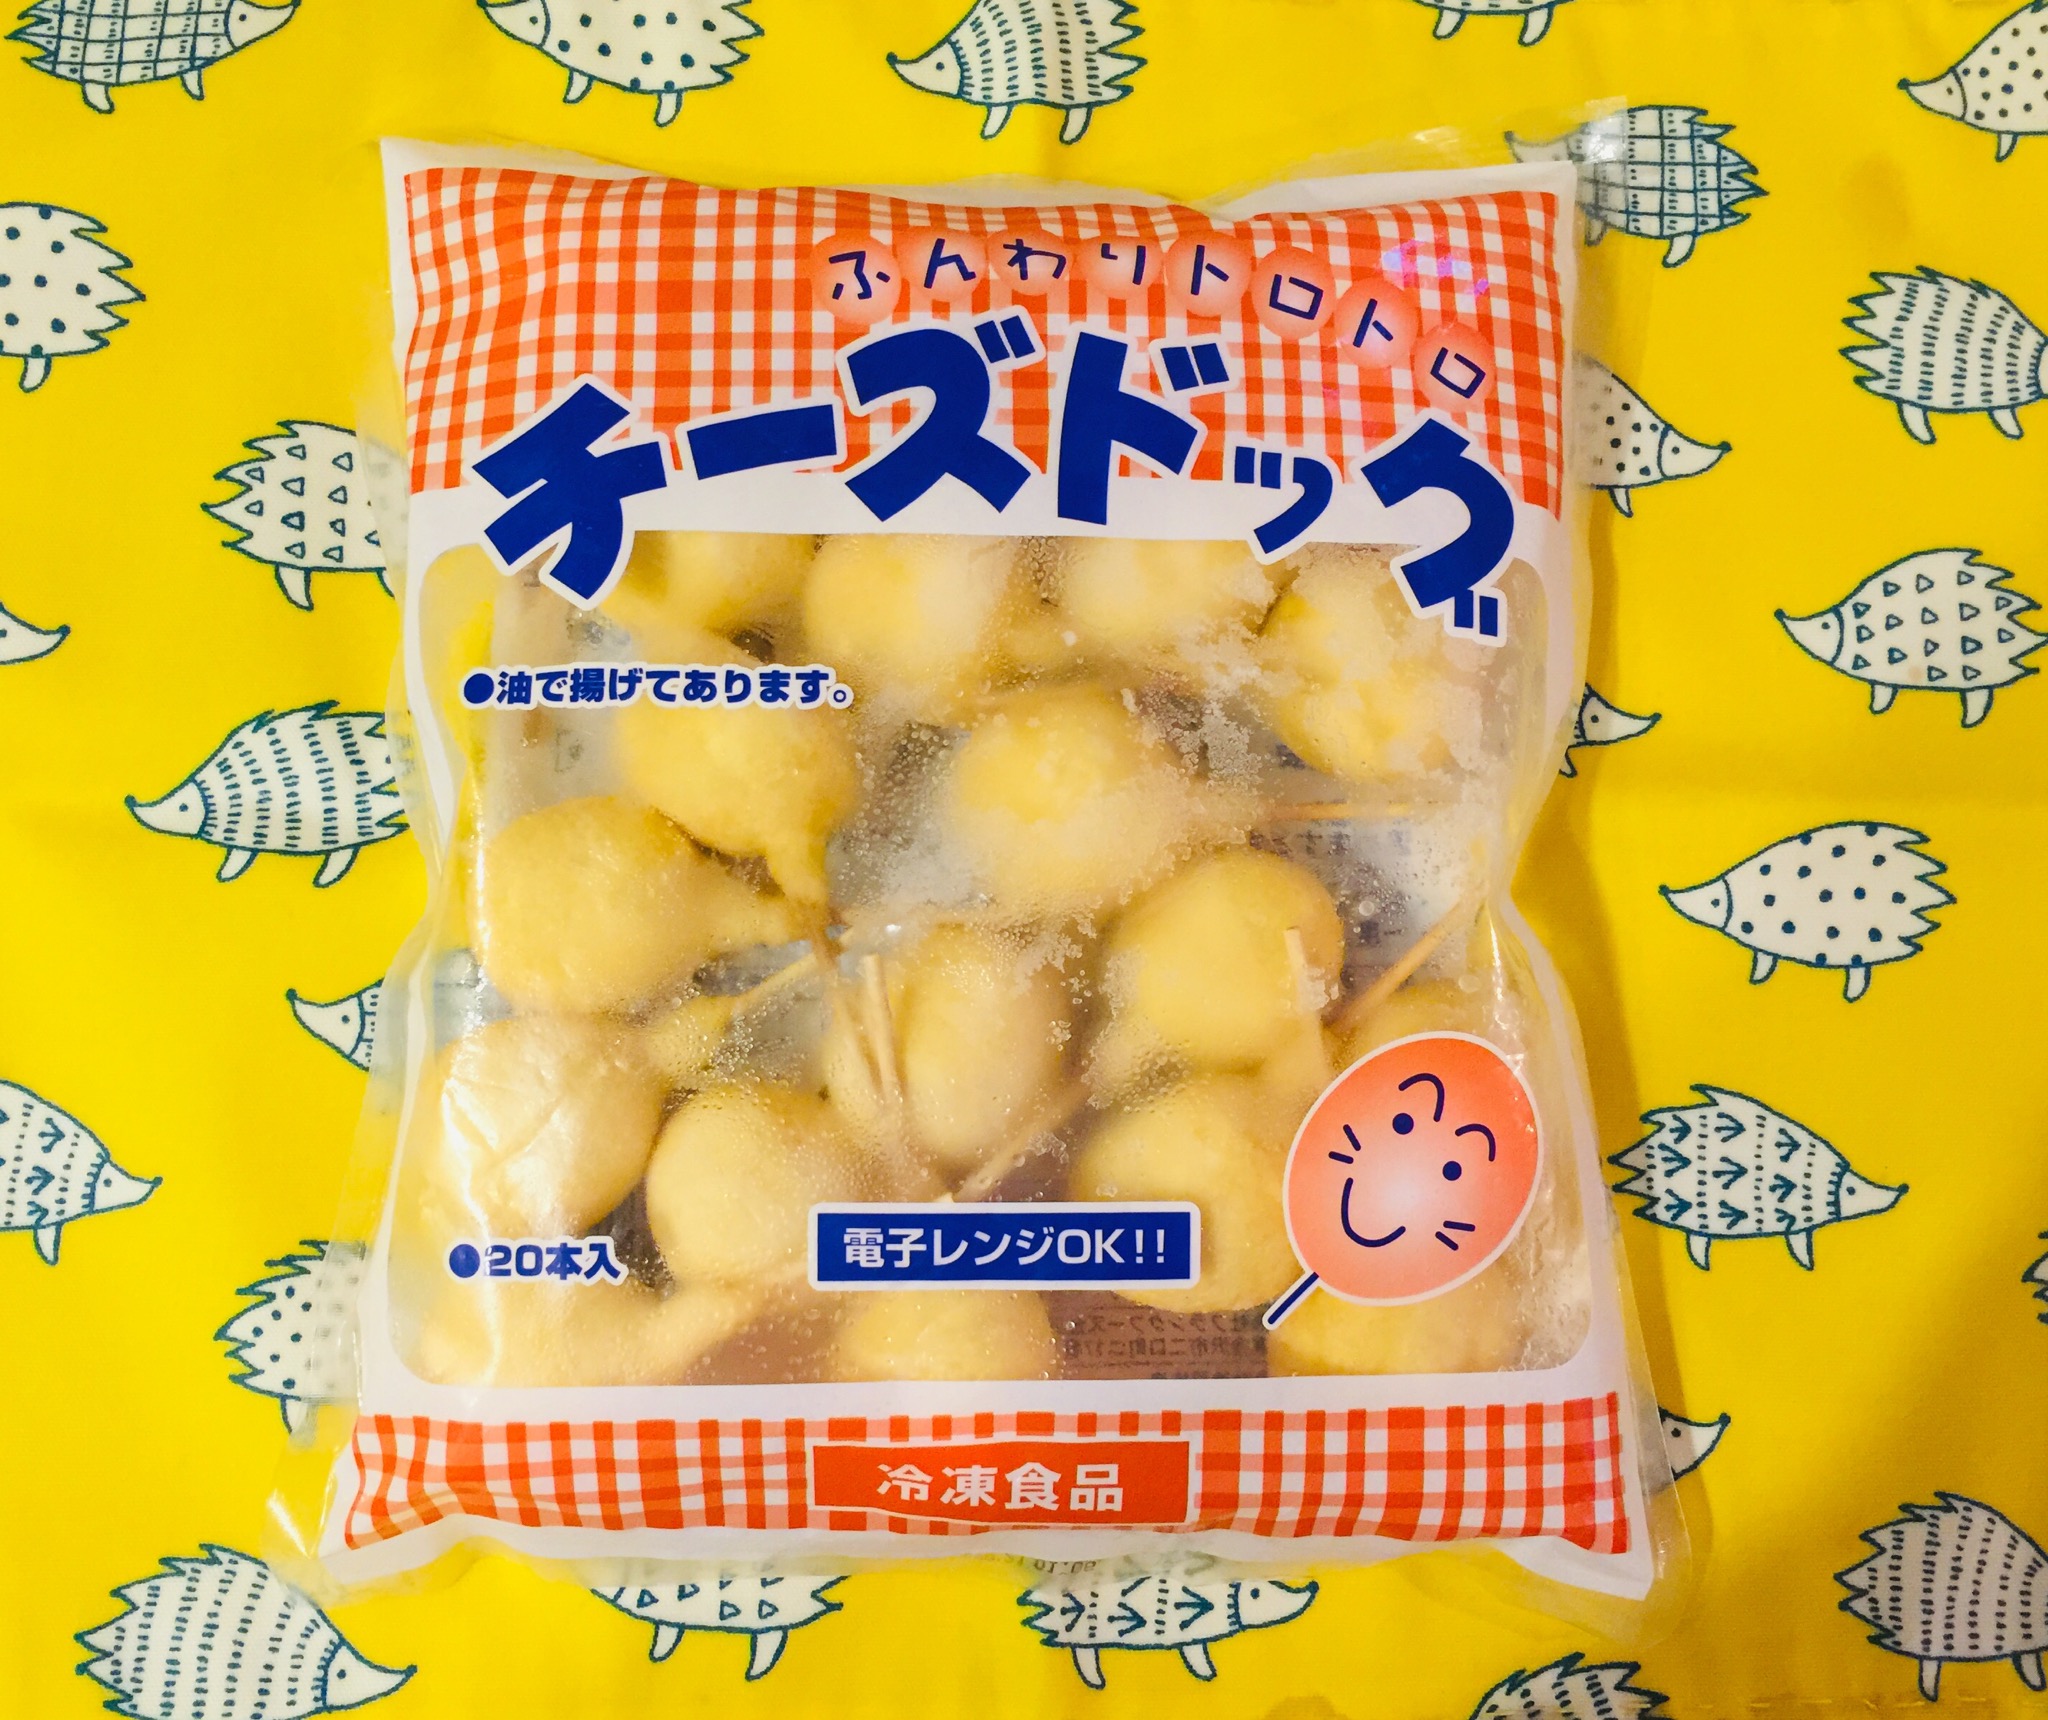 業務スーパー 冷凍チーズドッグ 石川県 業務スーパーの商品をレポートするブログ